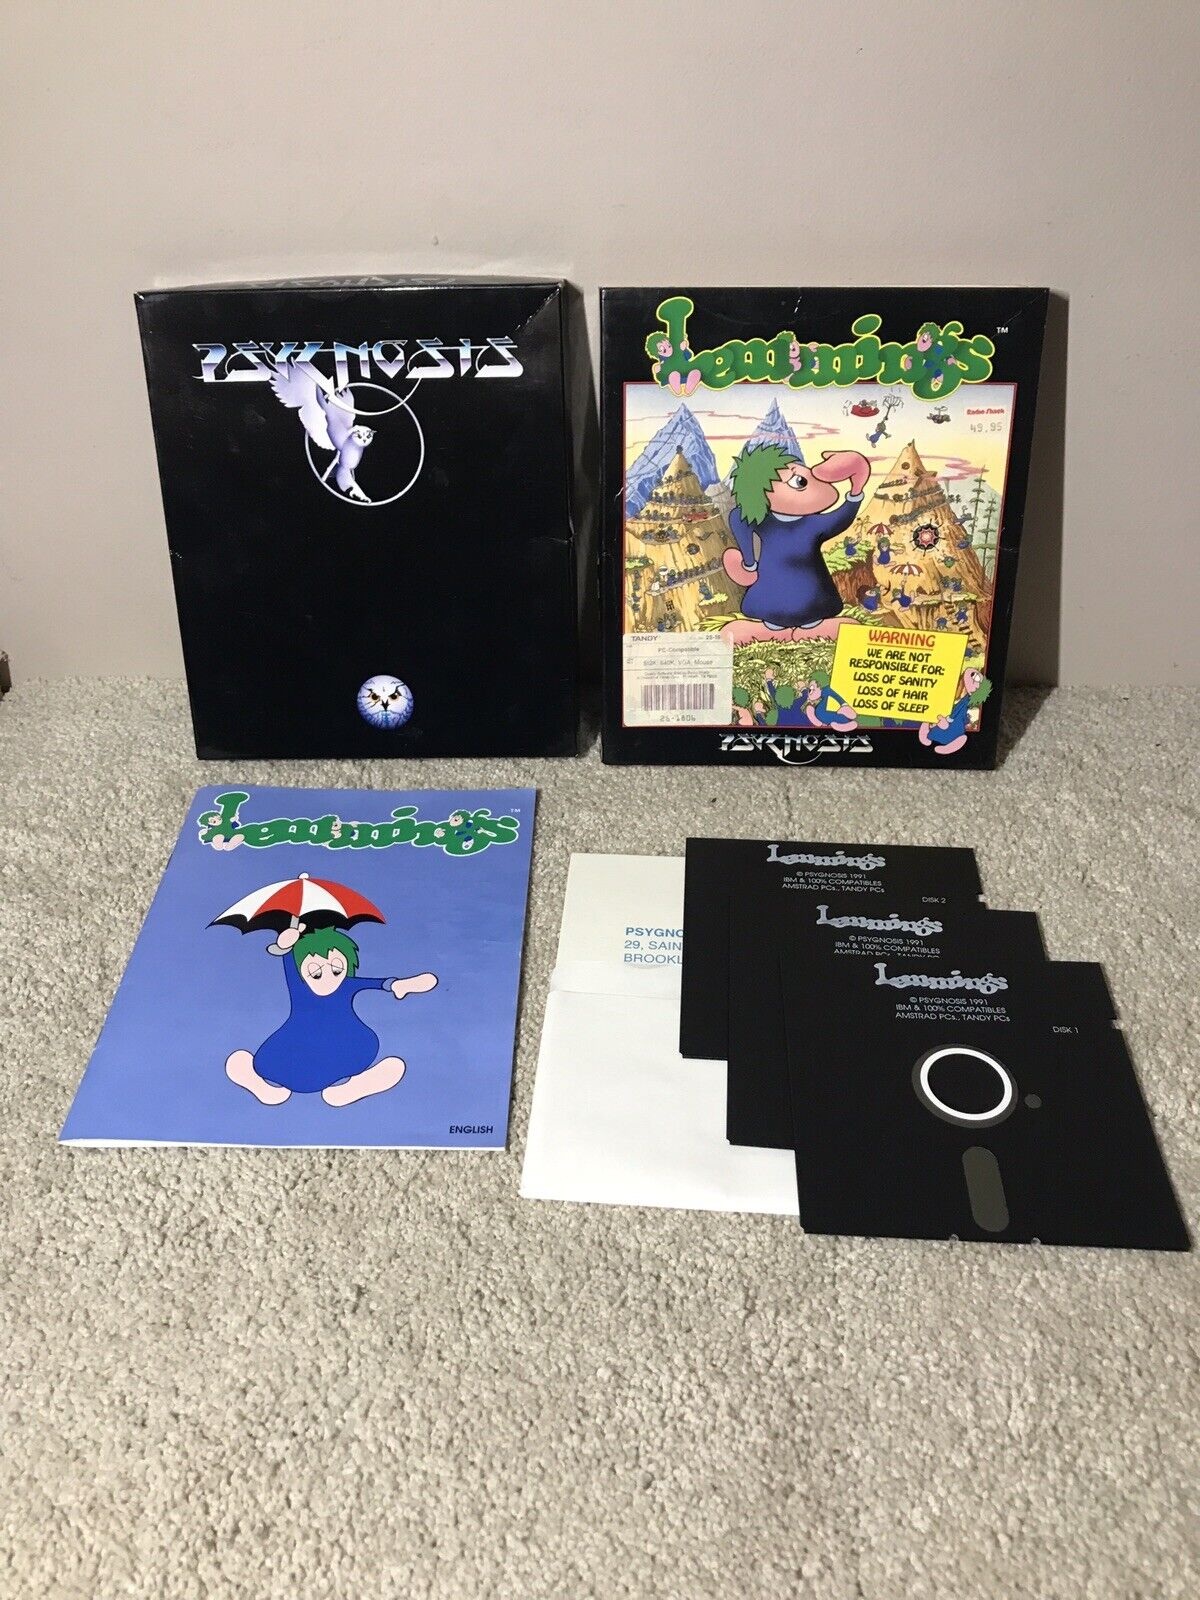 Lemmings Big Box Pc Game 1991 Psygnosis Floppy Disk 5 1/4" Tandy Ibm